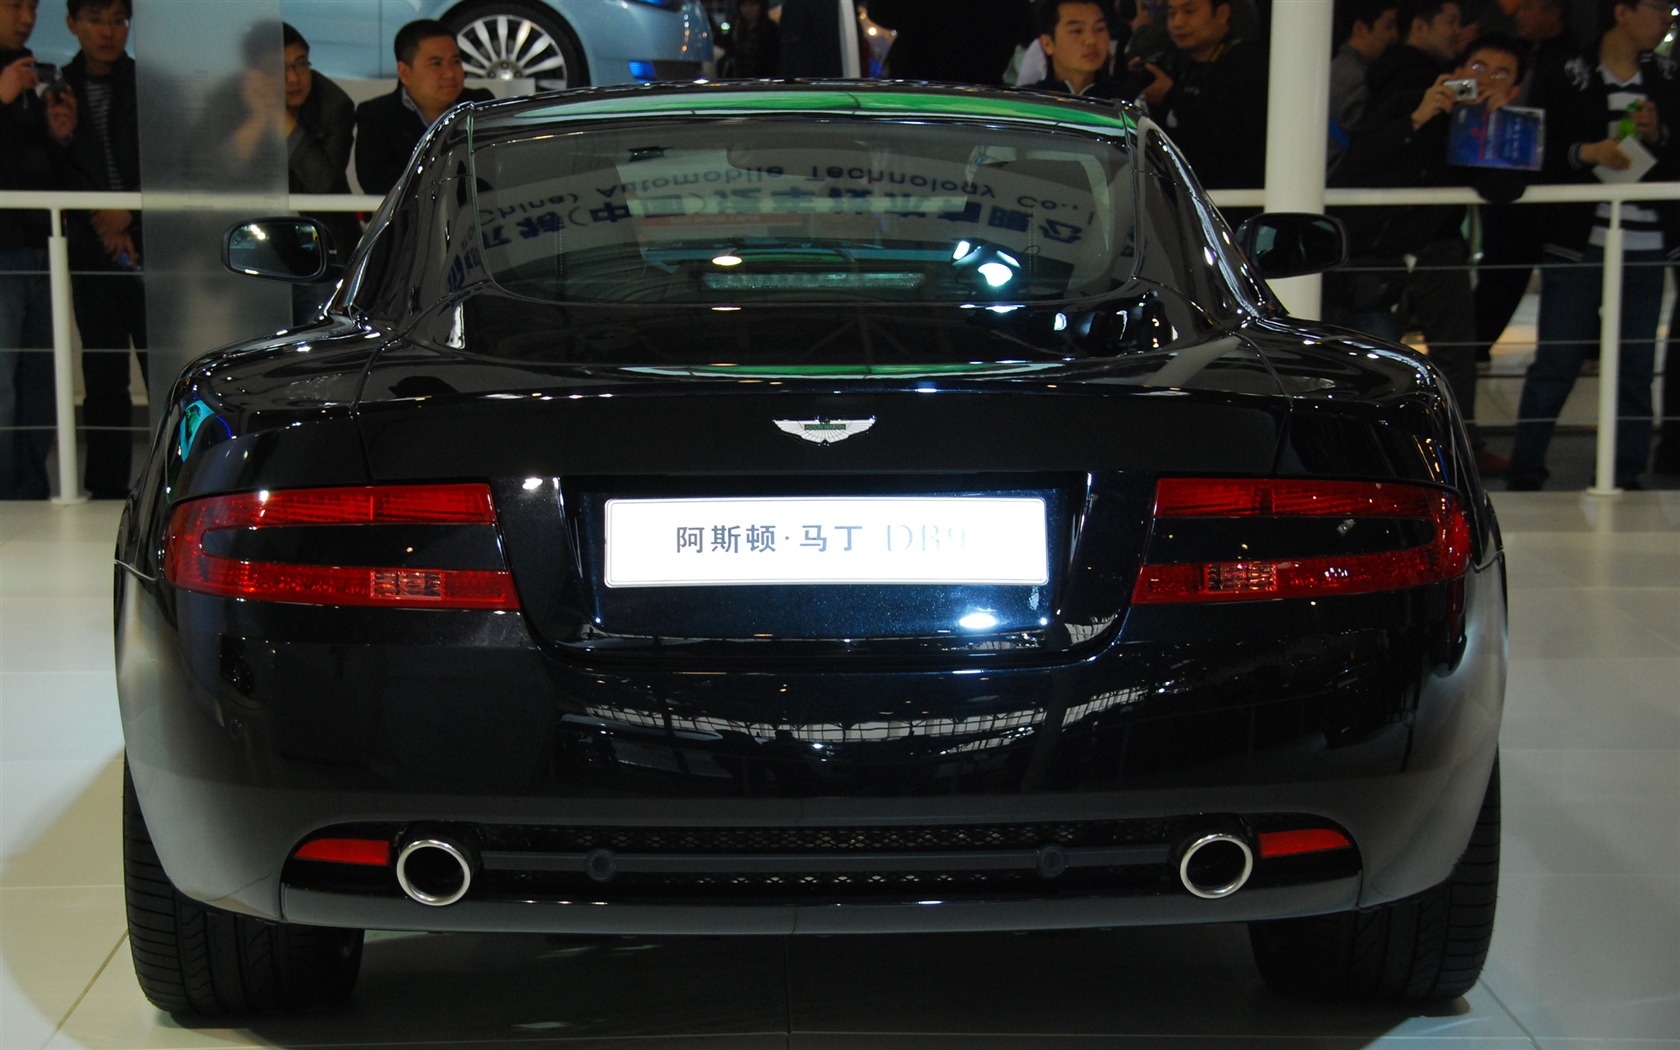 2010北京国际车展(一) (z321x123作品)30 - 1680x1050